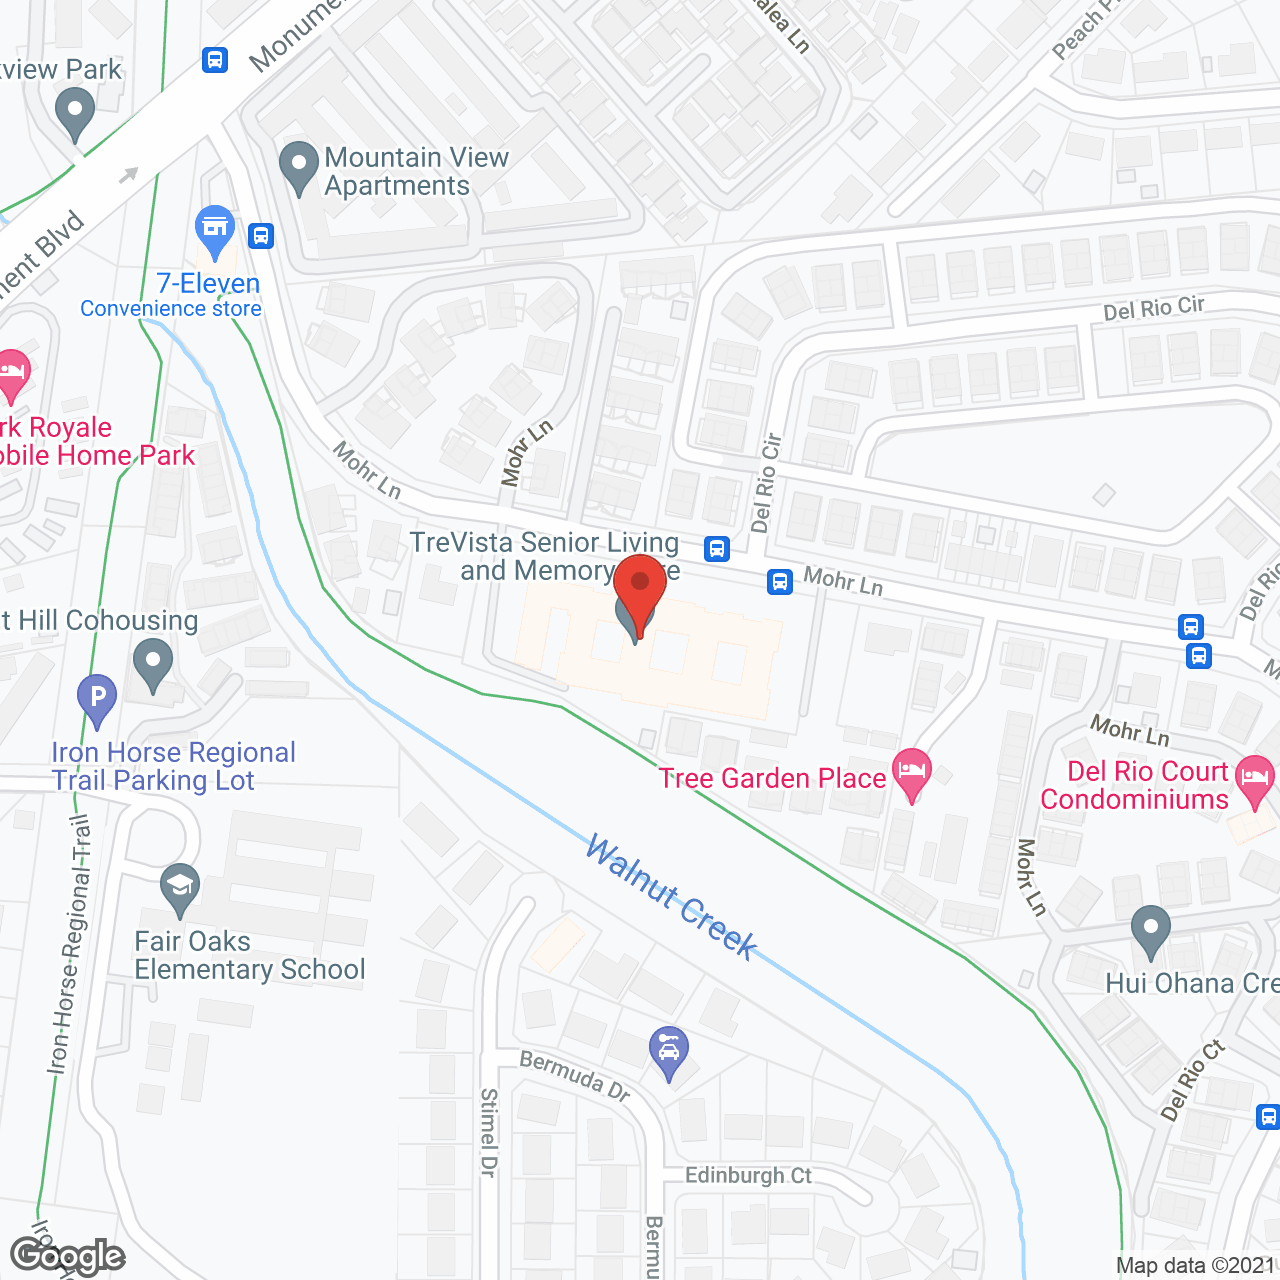 TreVista-Concord in google map